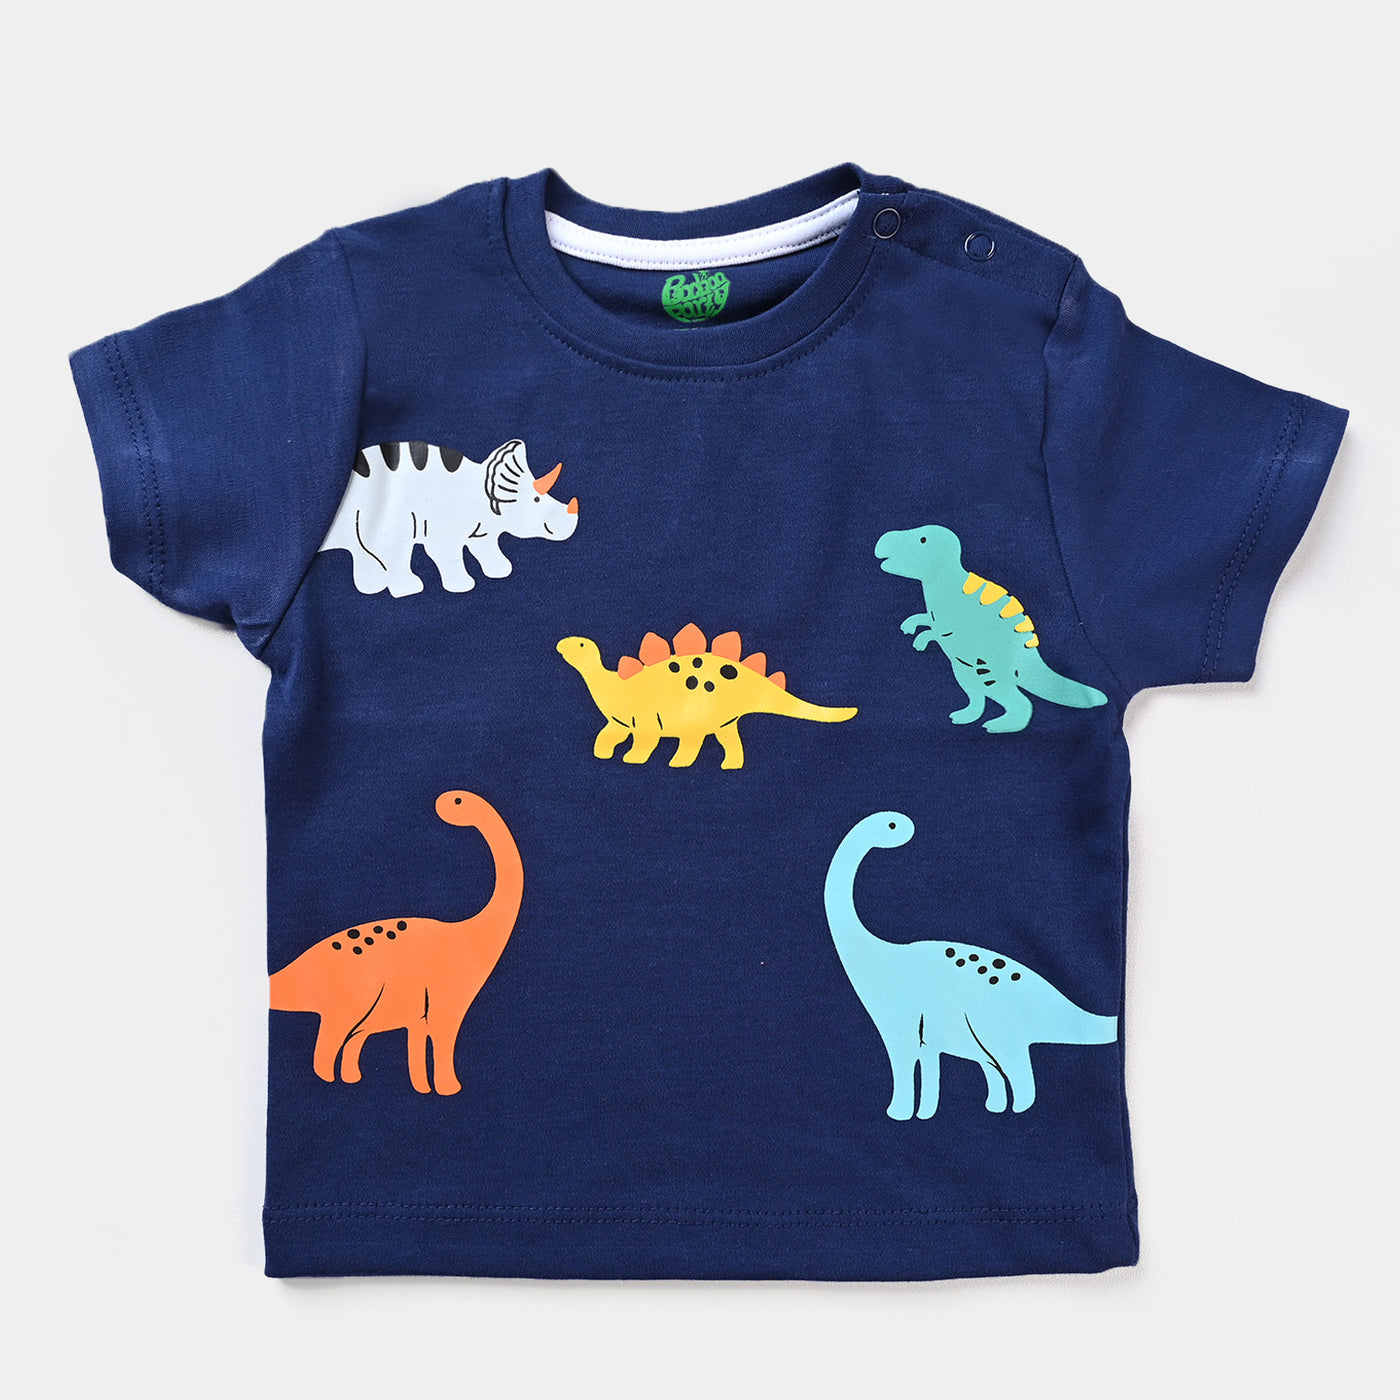 Infant Boys Cotton Jersey 2 Piece Set Dinosaurs- True Navy